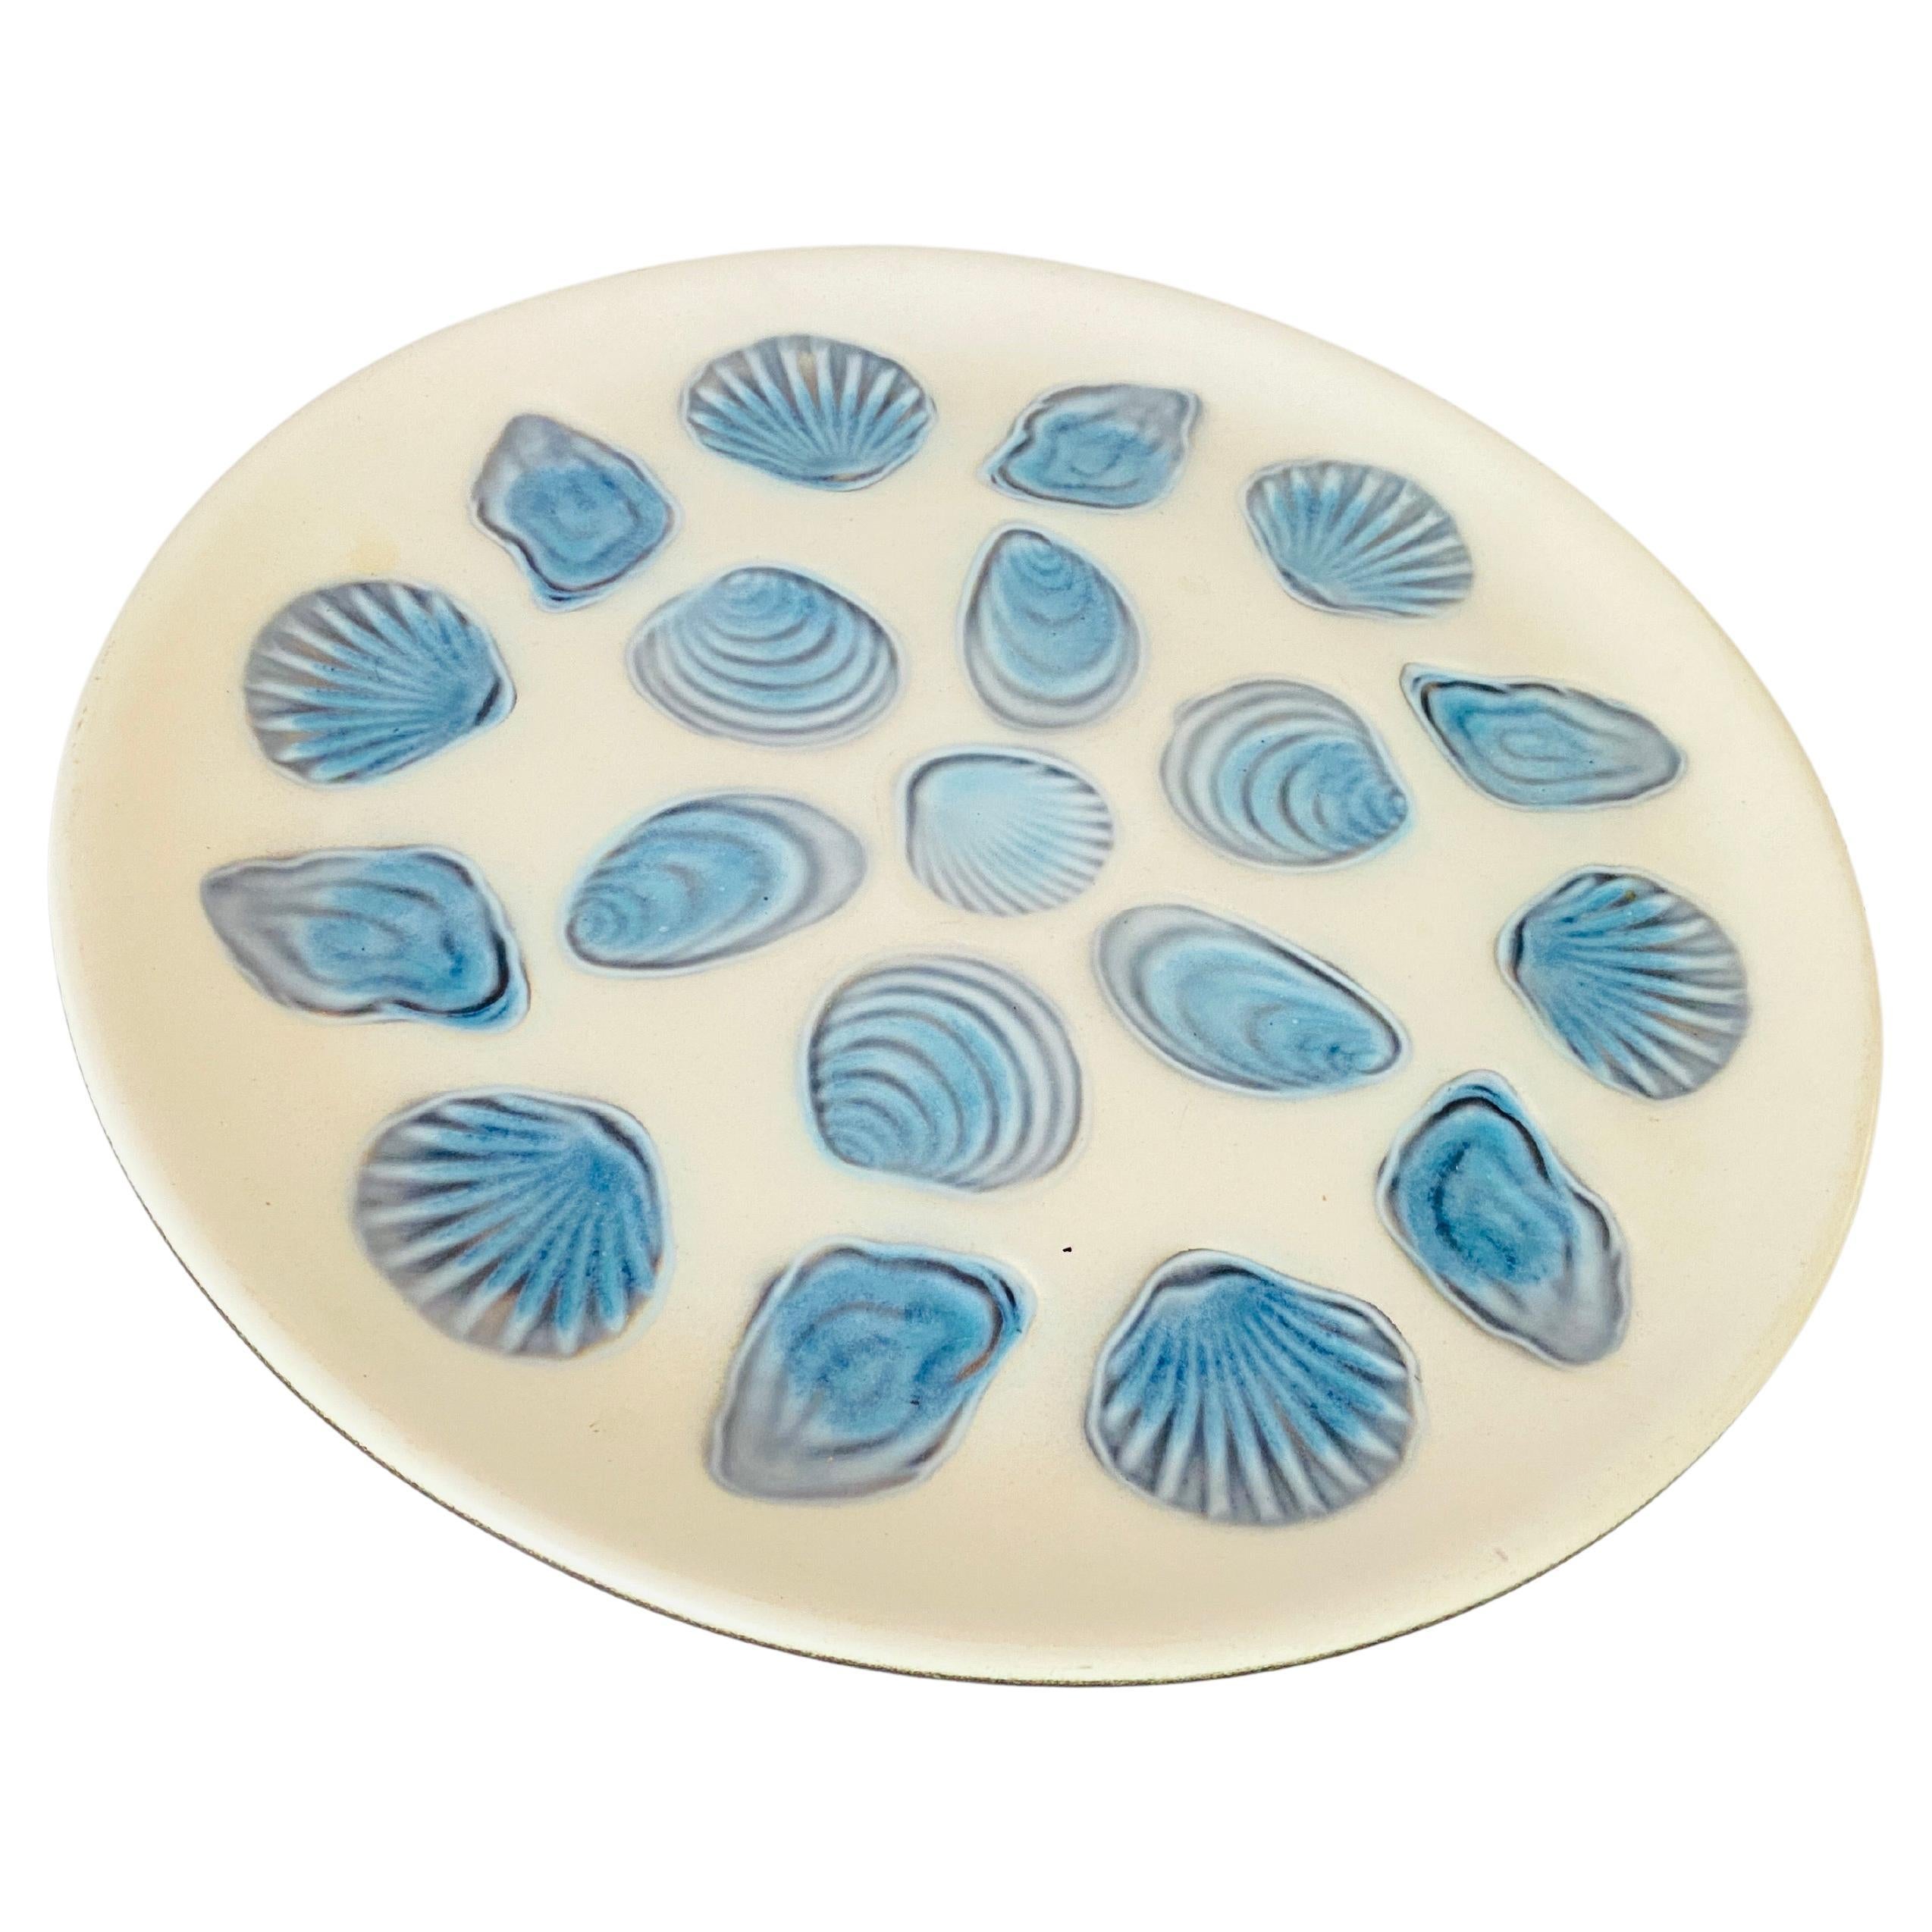 Großer Austernteller aus Keramik in Blau und Weiß, 1960, Frankreich von Elchinger